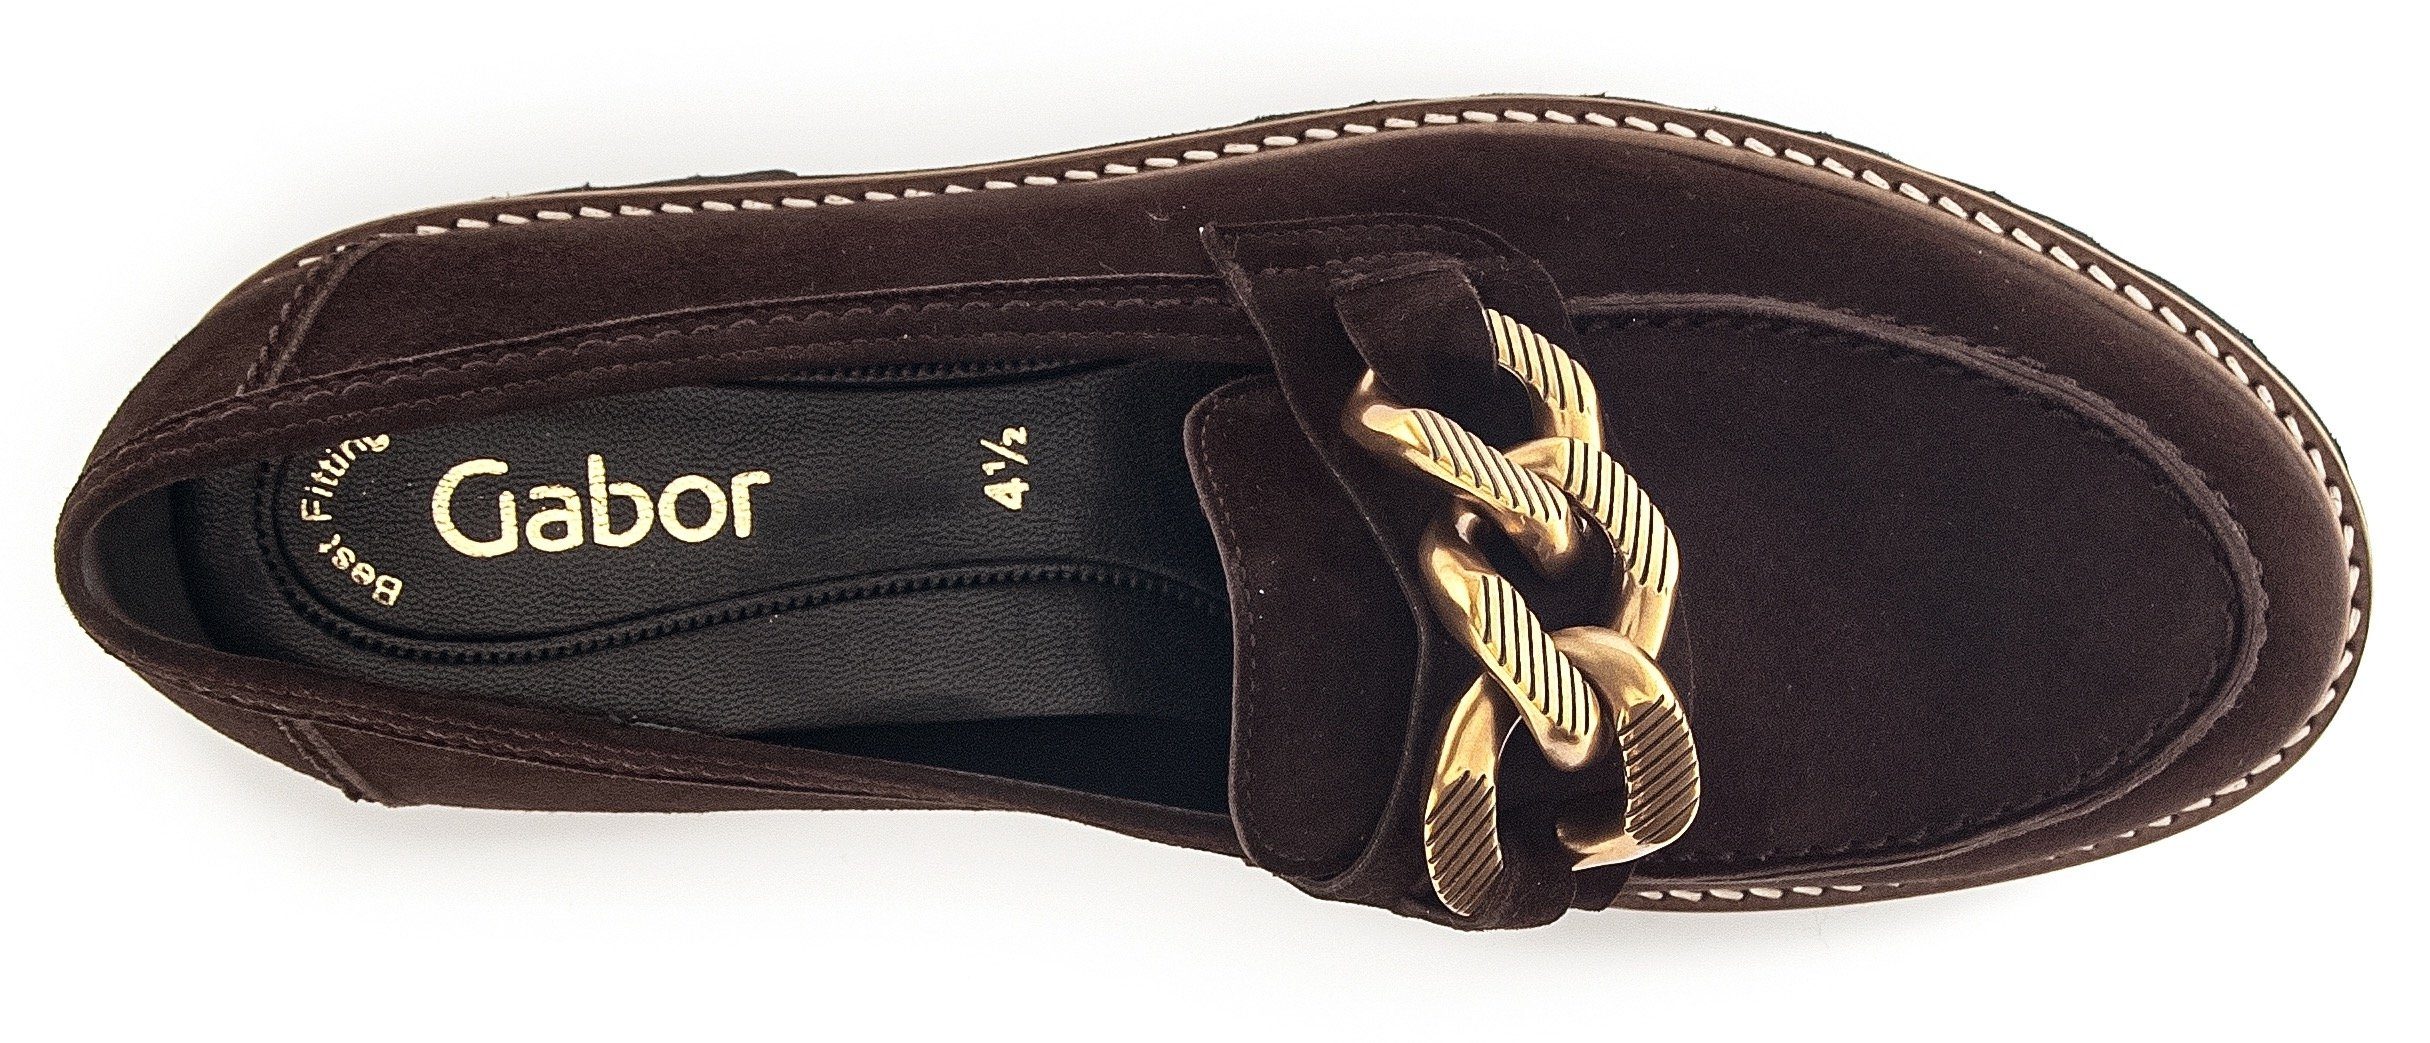 Best dunkelbraun-goldfarben Slipper mit Gabor Fitting-Ausstattung